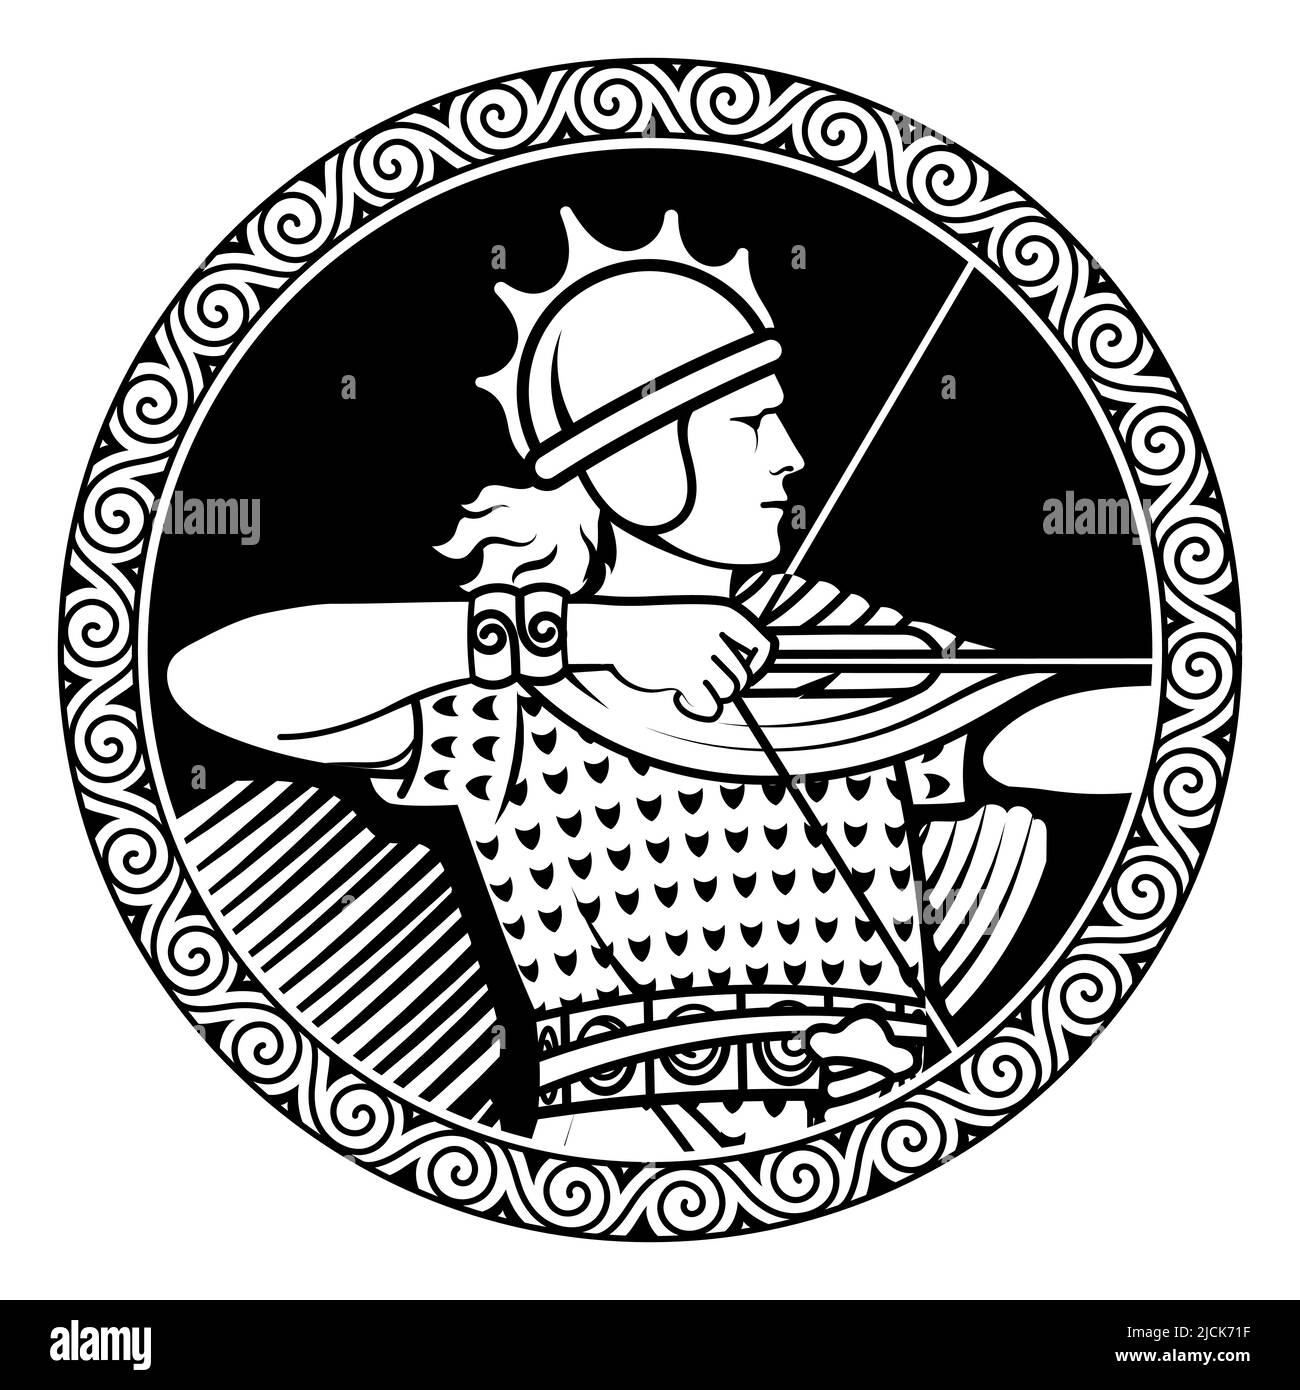 Design in stile Old Norse. Arciere vichingo in una cornice di ornamento scandinavo Illustrazione Vettoriale